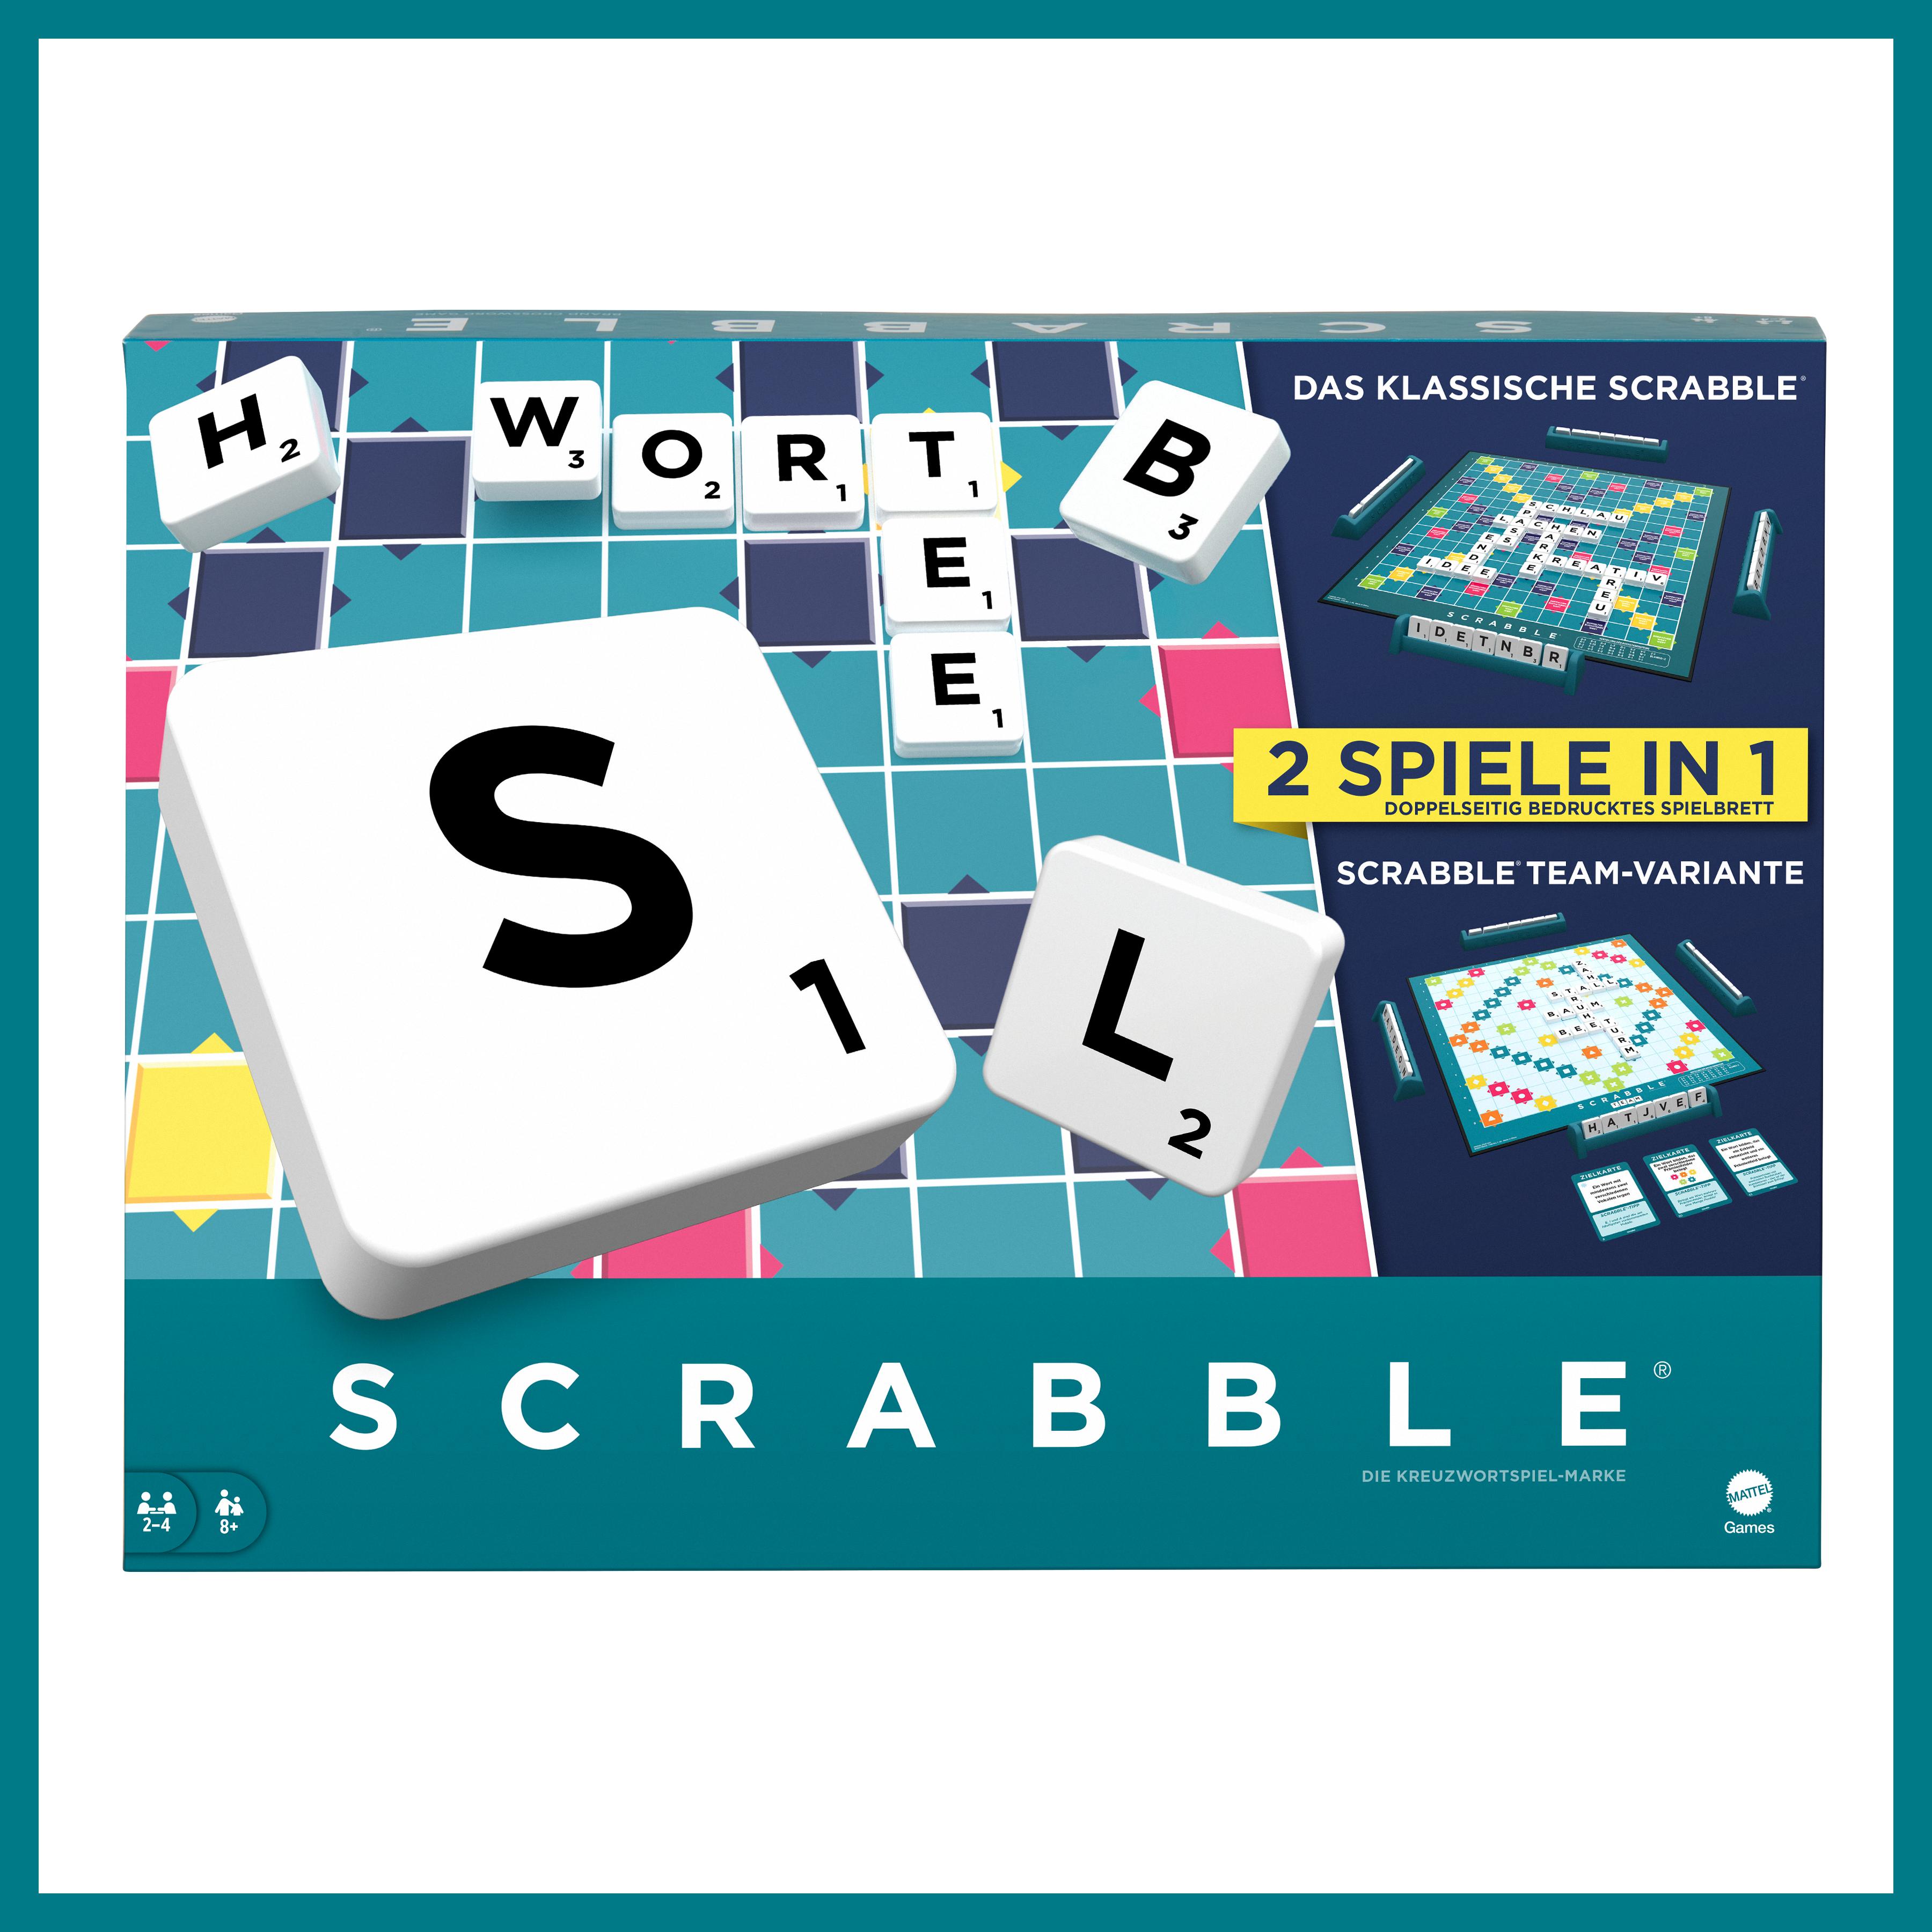 Scrabble präsentiert zum ersten Mal seit 75 Jahren neuen inklusiven Spielmodus